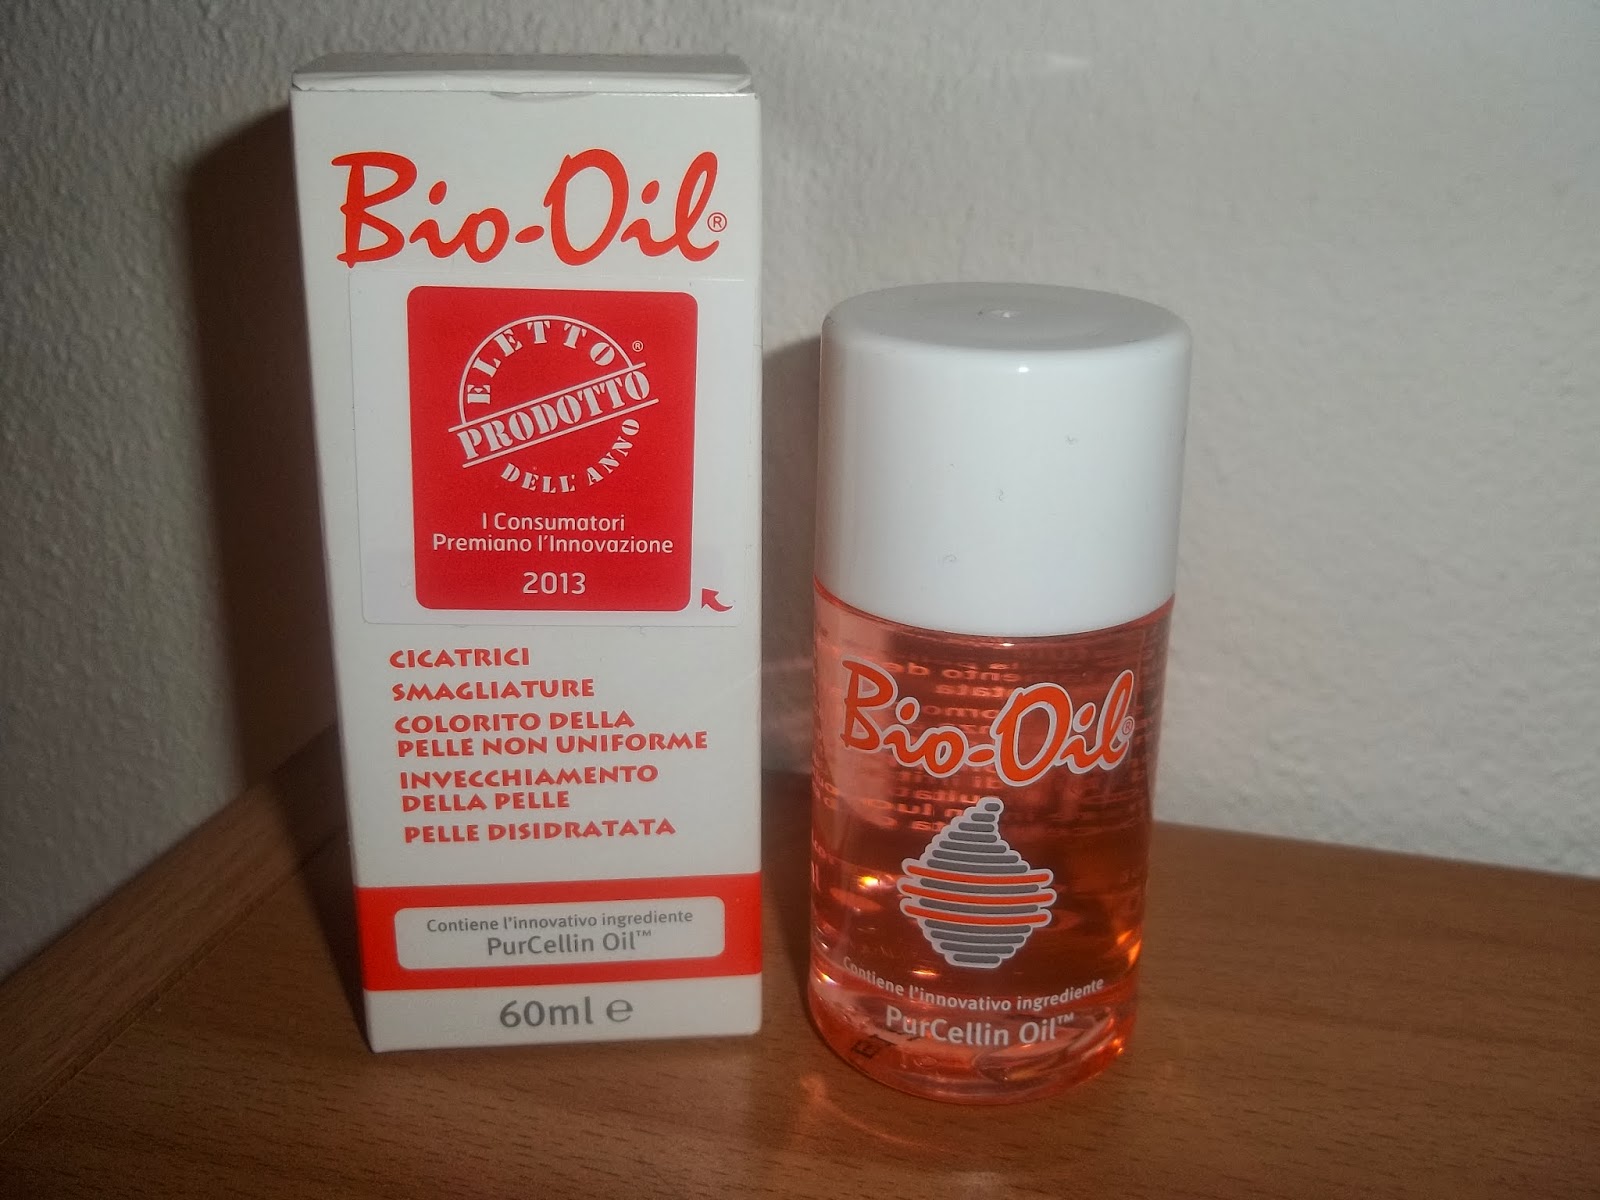 bio-oil la soluzione ai problemi della pelle 